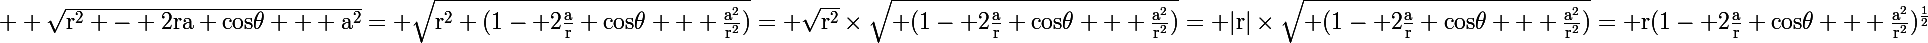 \Large \rm \sqrt{r^2 - 2ra cos\theta + a^2}= \sqrt{r^2 (1- 2\frac{a}{r} cos\theta + \frac{a^2}{r^2})}= \sqrt{r^2}\times\sqrt{ (1- 2\frac{a}{r} cos\theta + \frac{a^2}{r^2})}= |r|\times\sqrt{ (1- 2\frac{a}{r} cos\theta + \frac{a^2}{r^2})}= r(1- 2\frac{a}{r} cos\theta + \frac{a^2}{r^2})^{\frac{1}{2}}